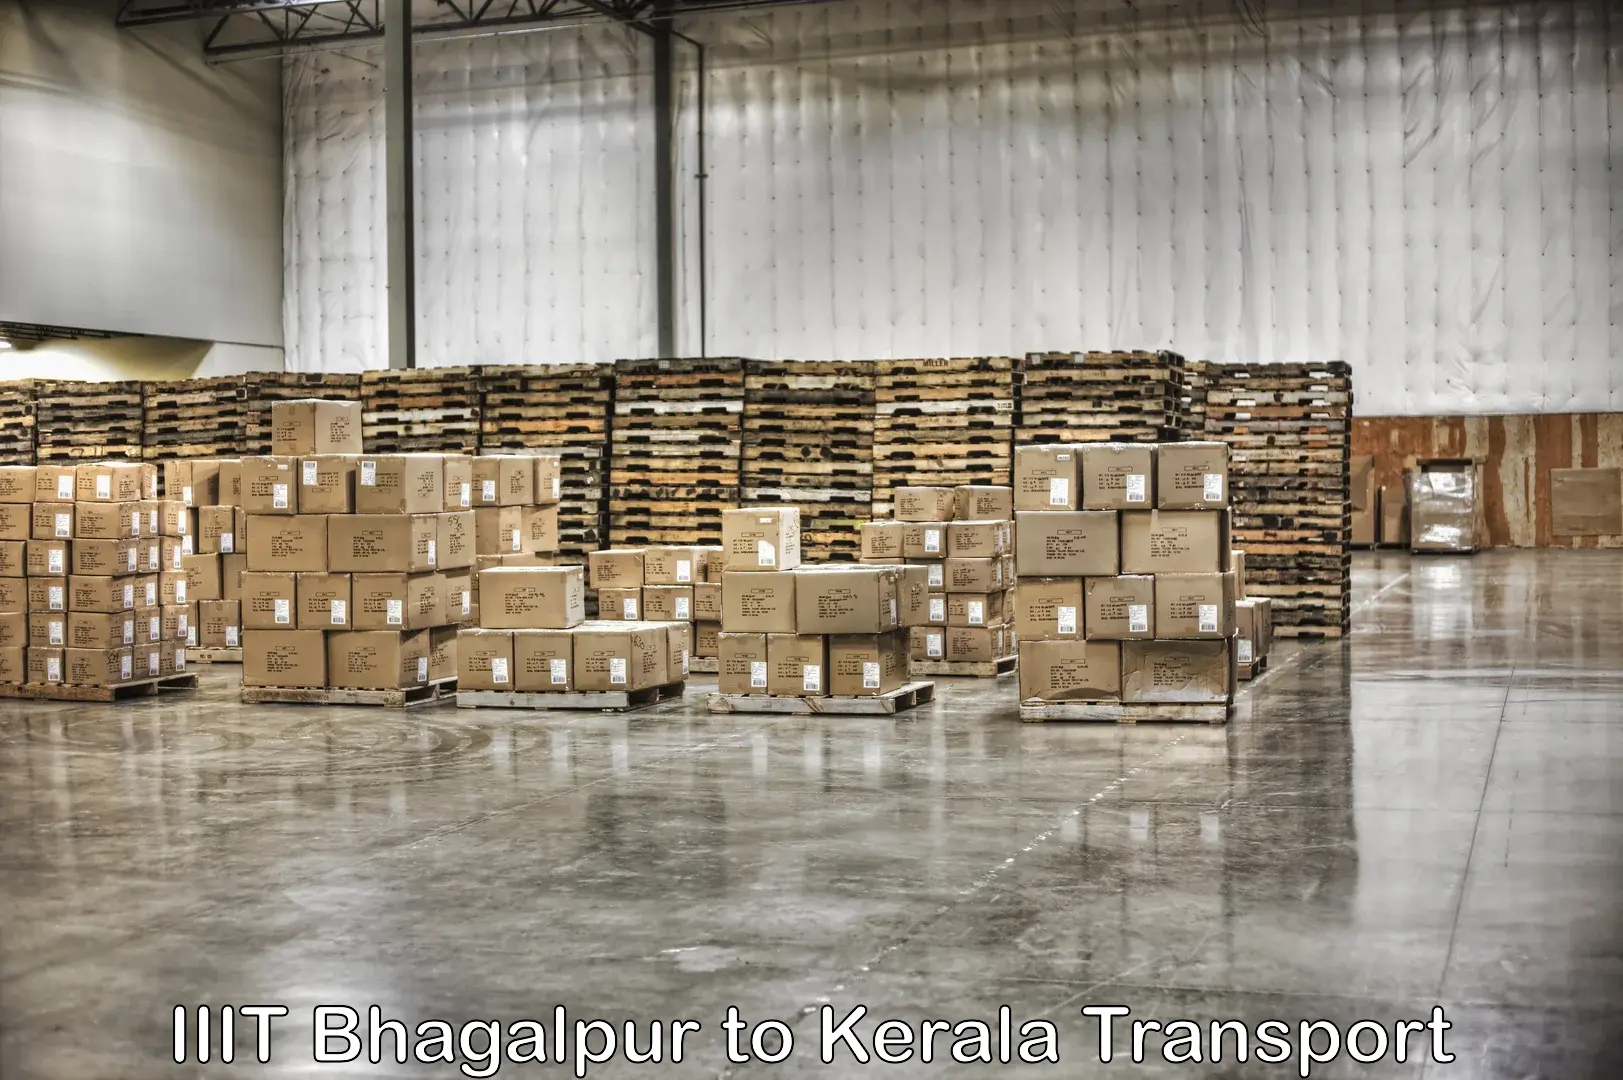 Cargo train transport services IIIT Bhagalpur to Kalanjoor